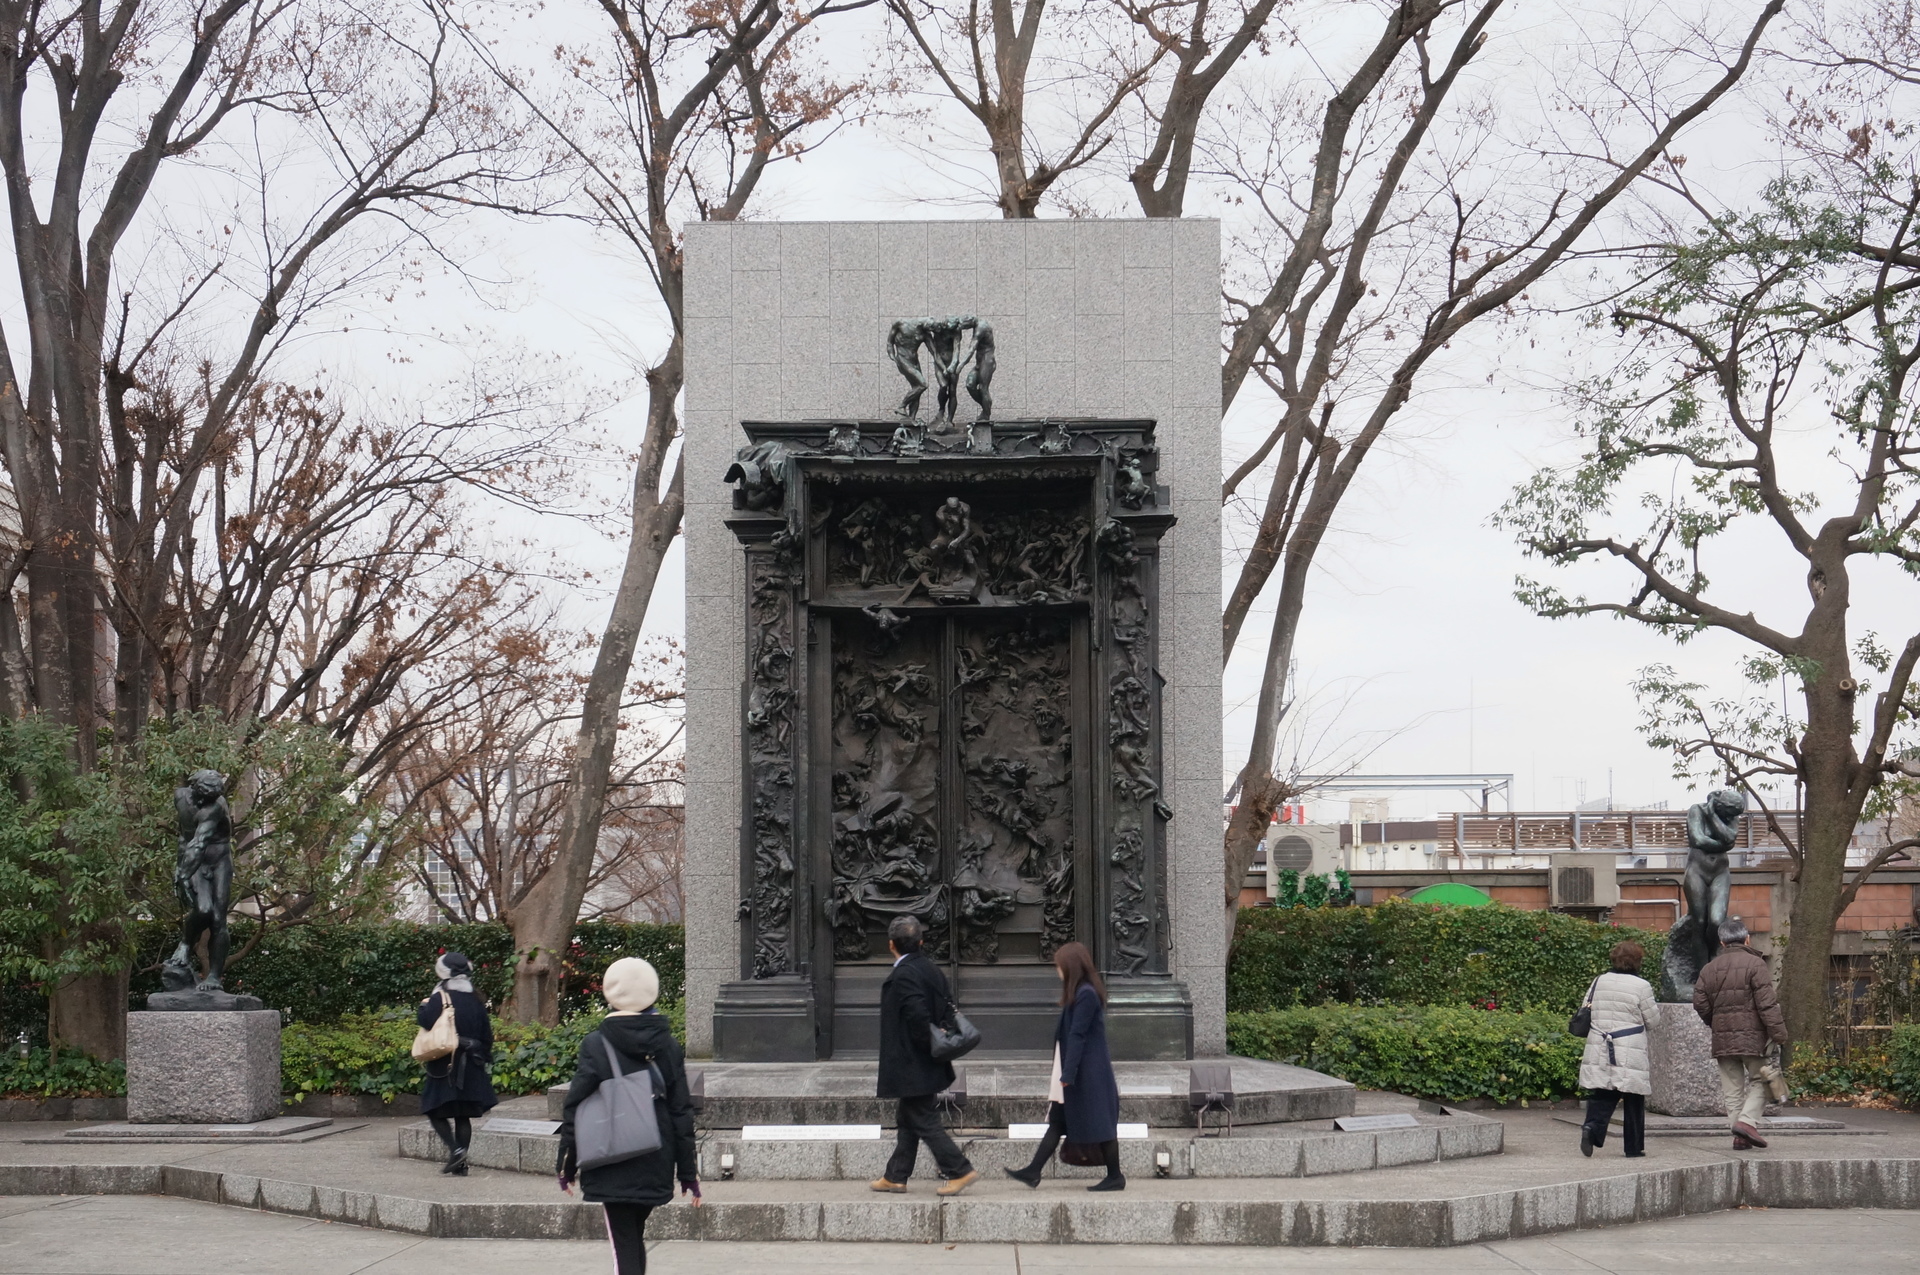 国立西洋美術館の前庭の彫刻 Ogu S Blog かずさ便り ちょっとだけpcの話も